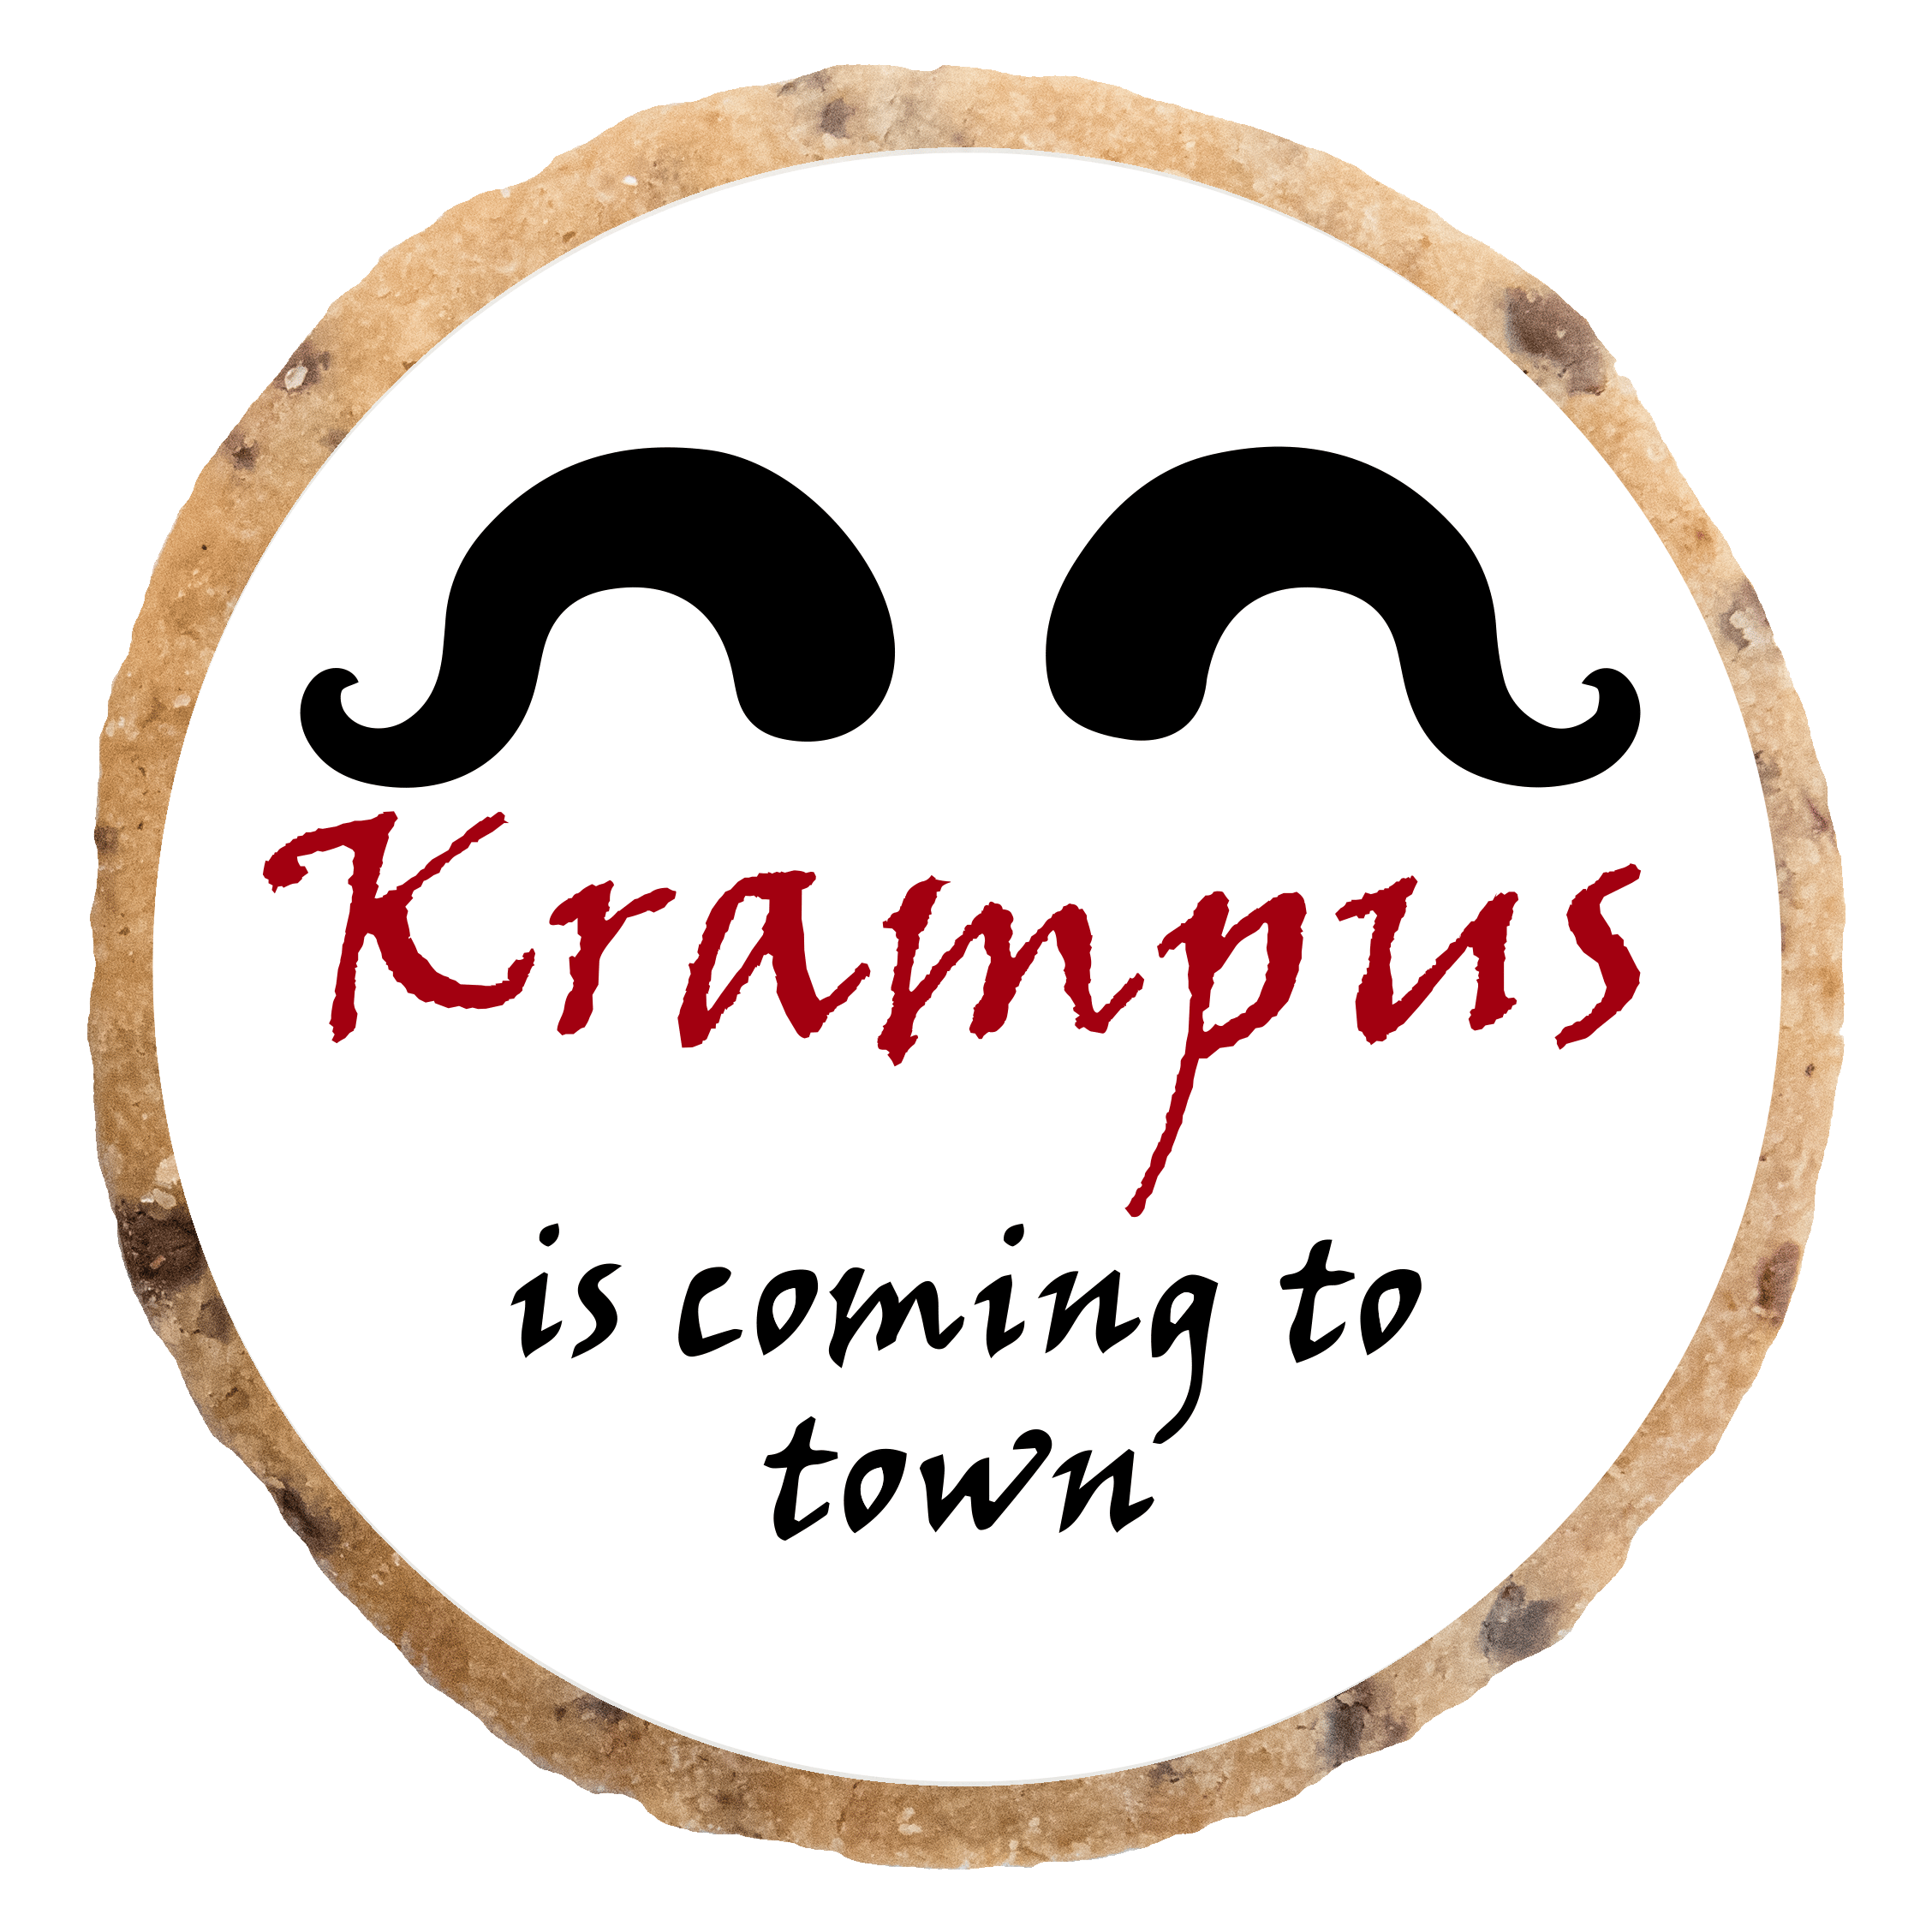 "Krampus is coming to town" MotivKEKS